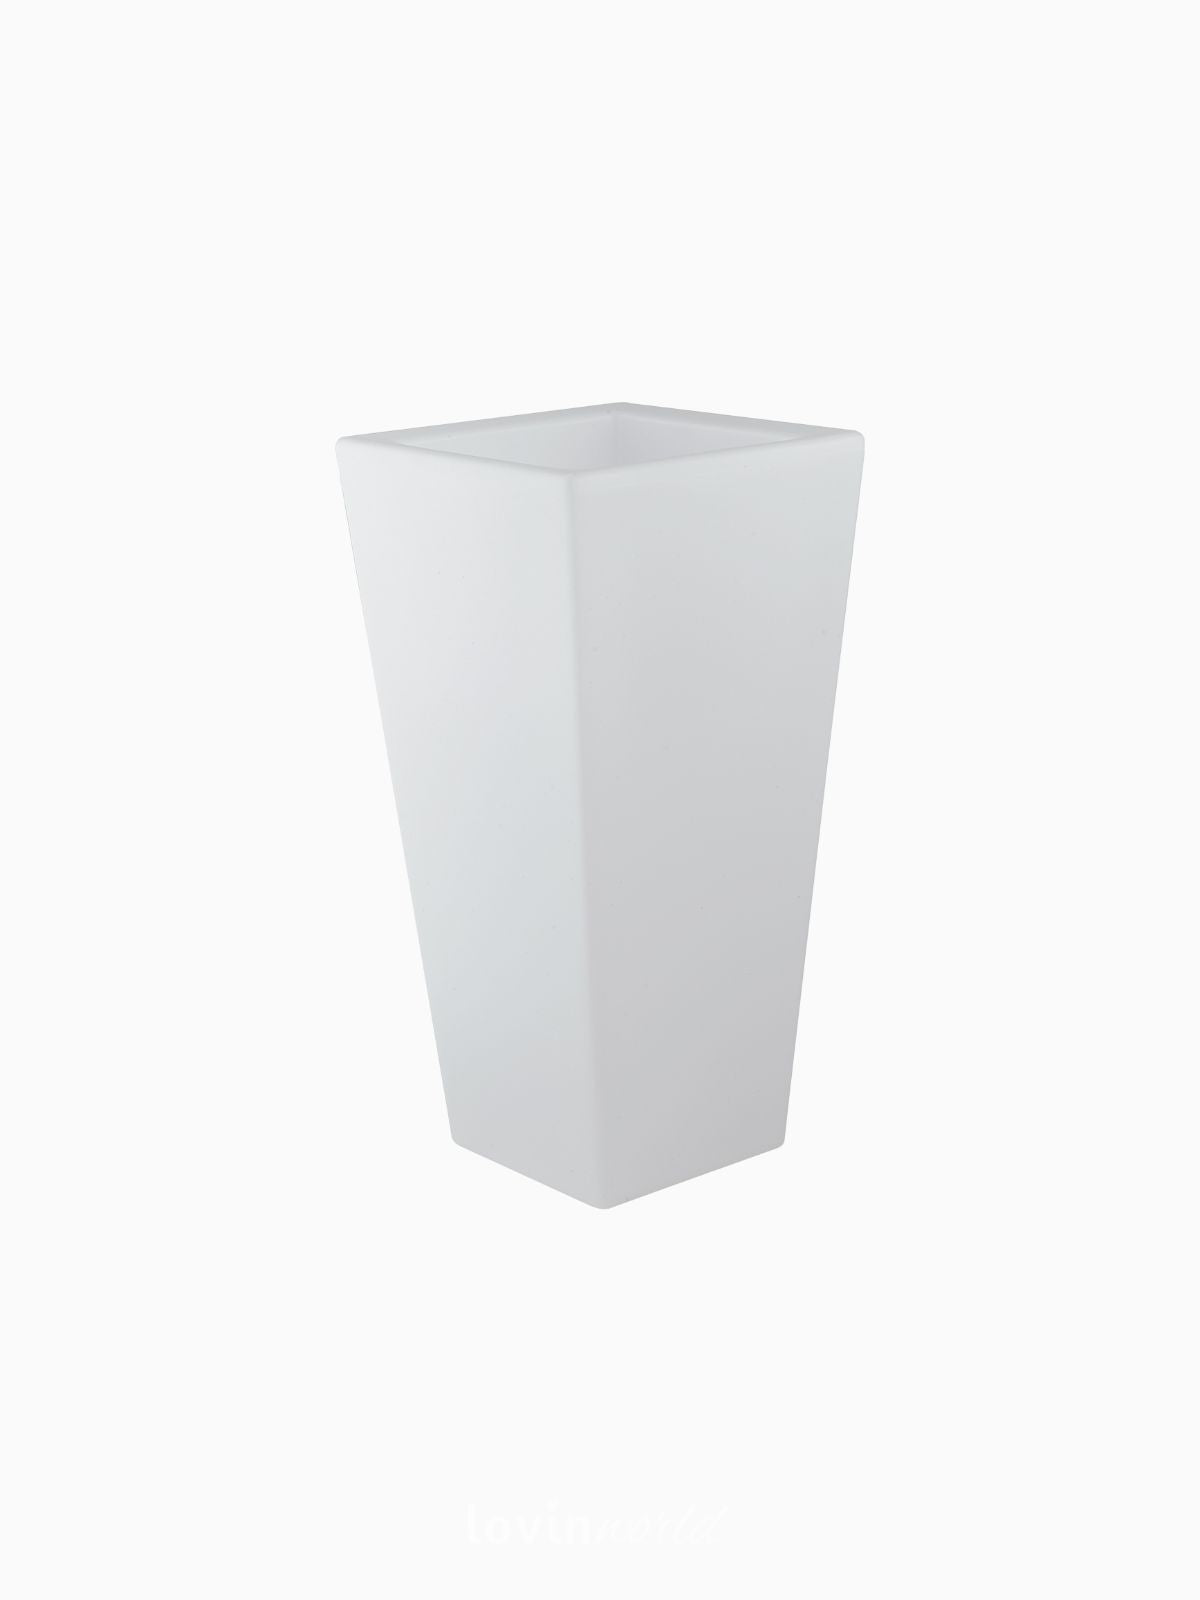 Vaso da esterno quadrato a LED Geco in polietilene, colore bianco 60 cm.-1